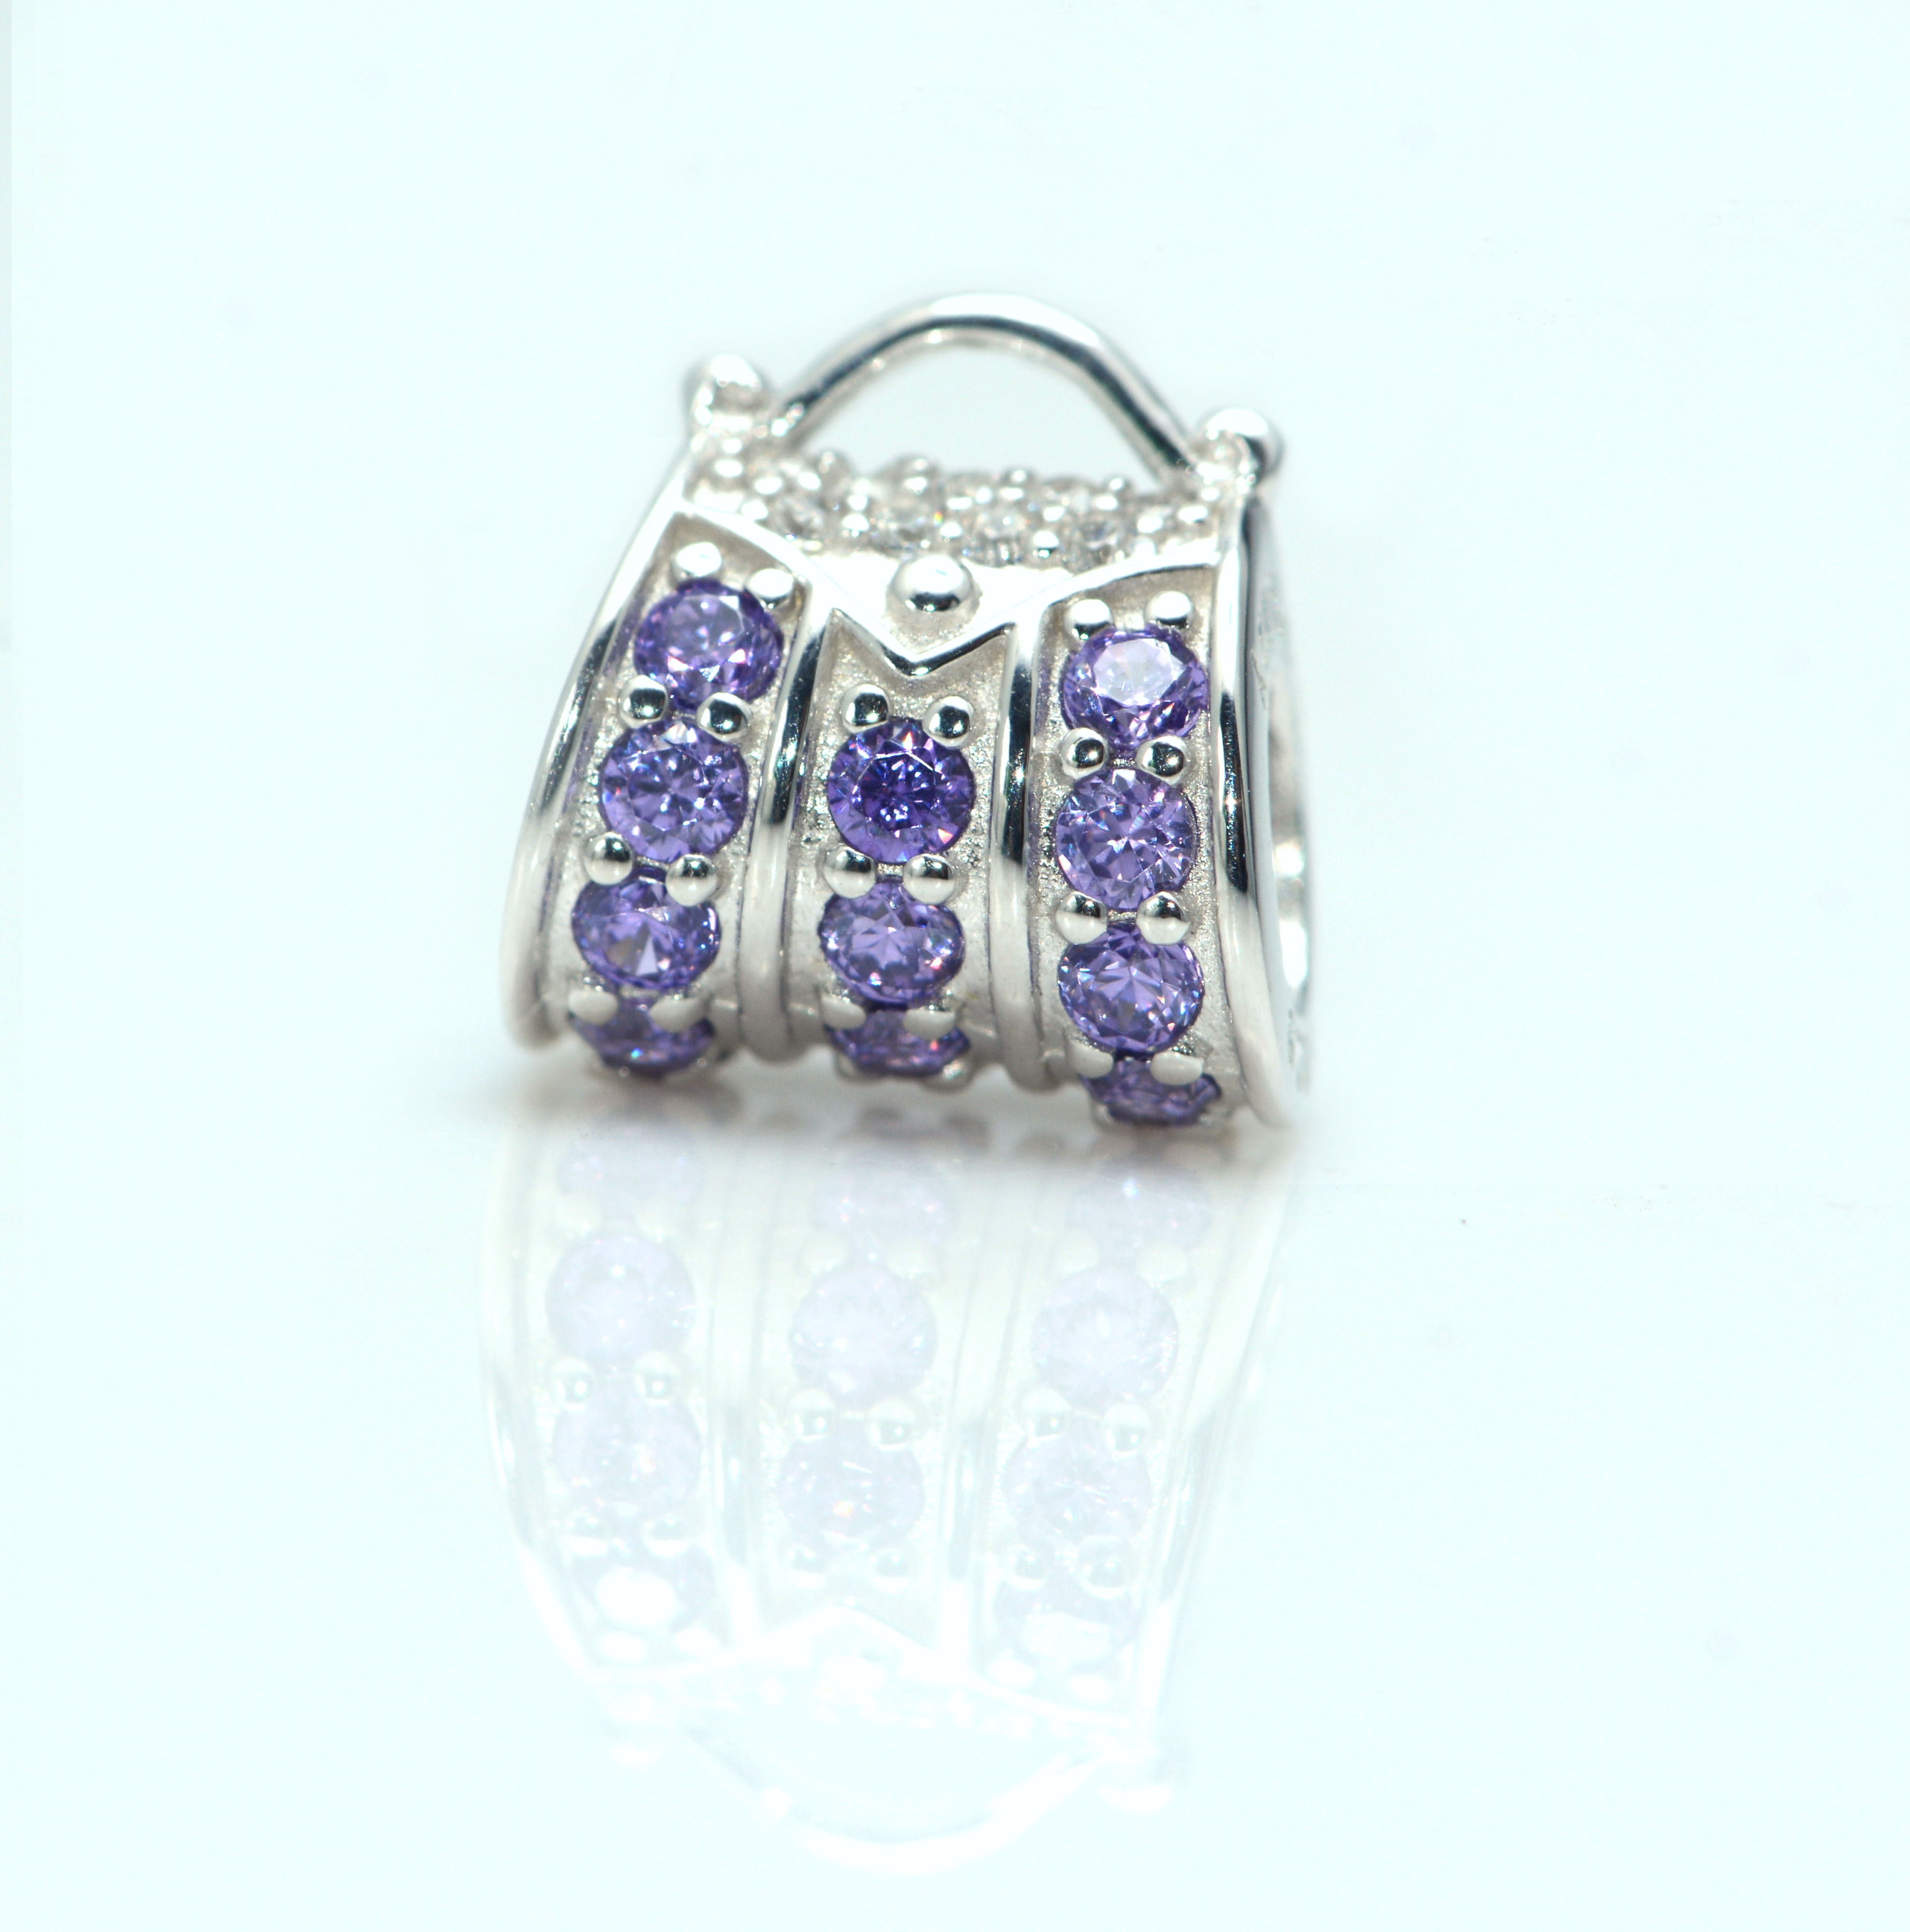 Handbag Sterling Silver Charms For Bracelet - Wholesale